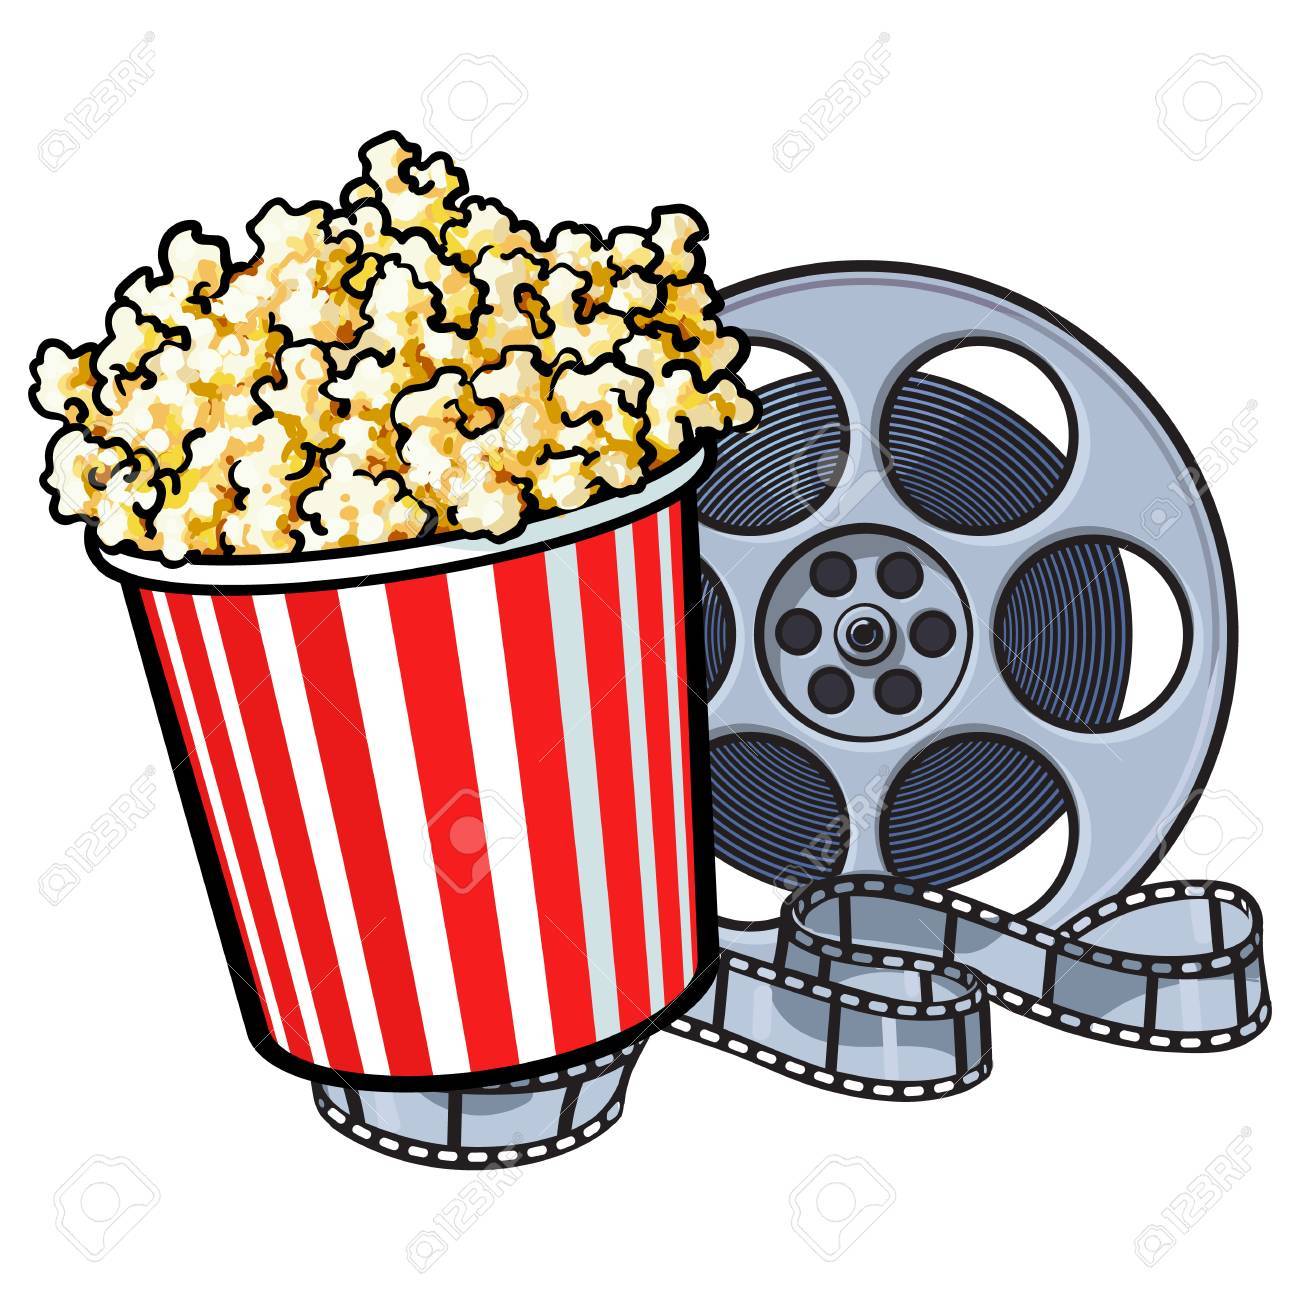 72885973-oggetti-del-cinema-popcorn-in-secchio-a-strisce-rosso-e-bianco-e-bobina-di-film-stile-retrò-illustrazio.jpg